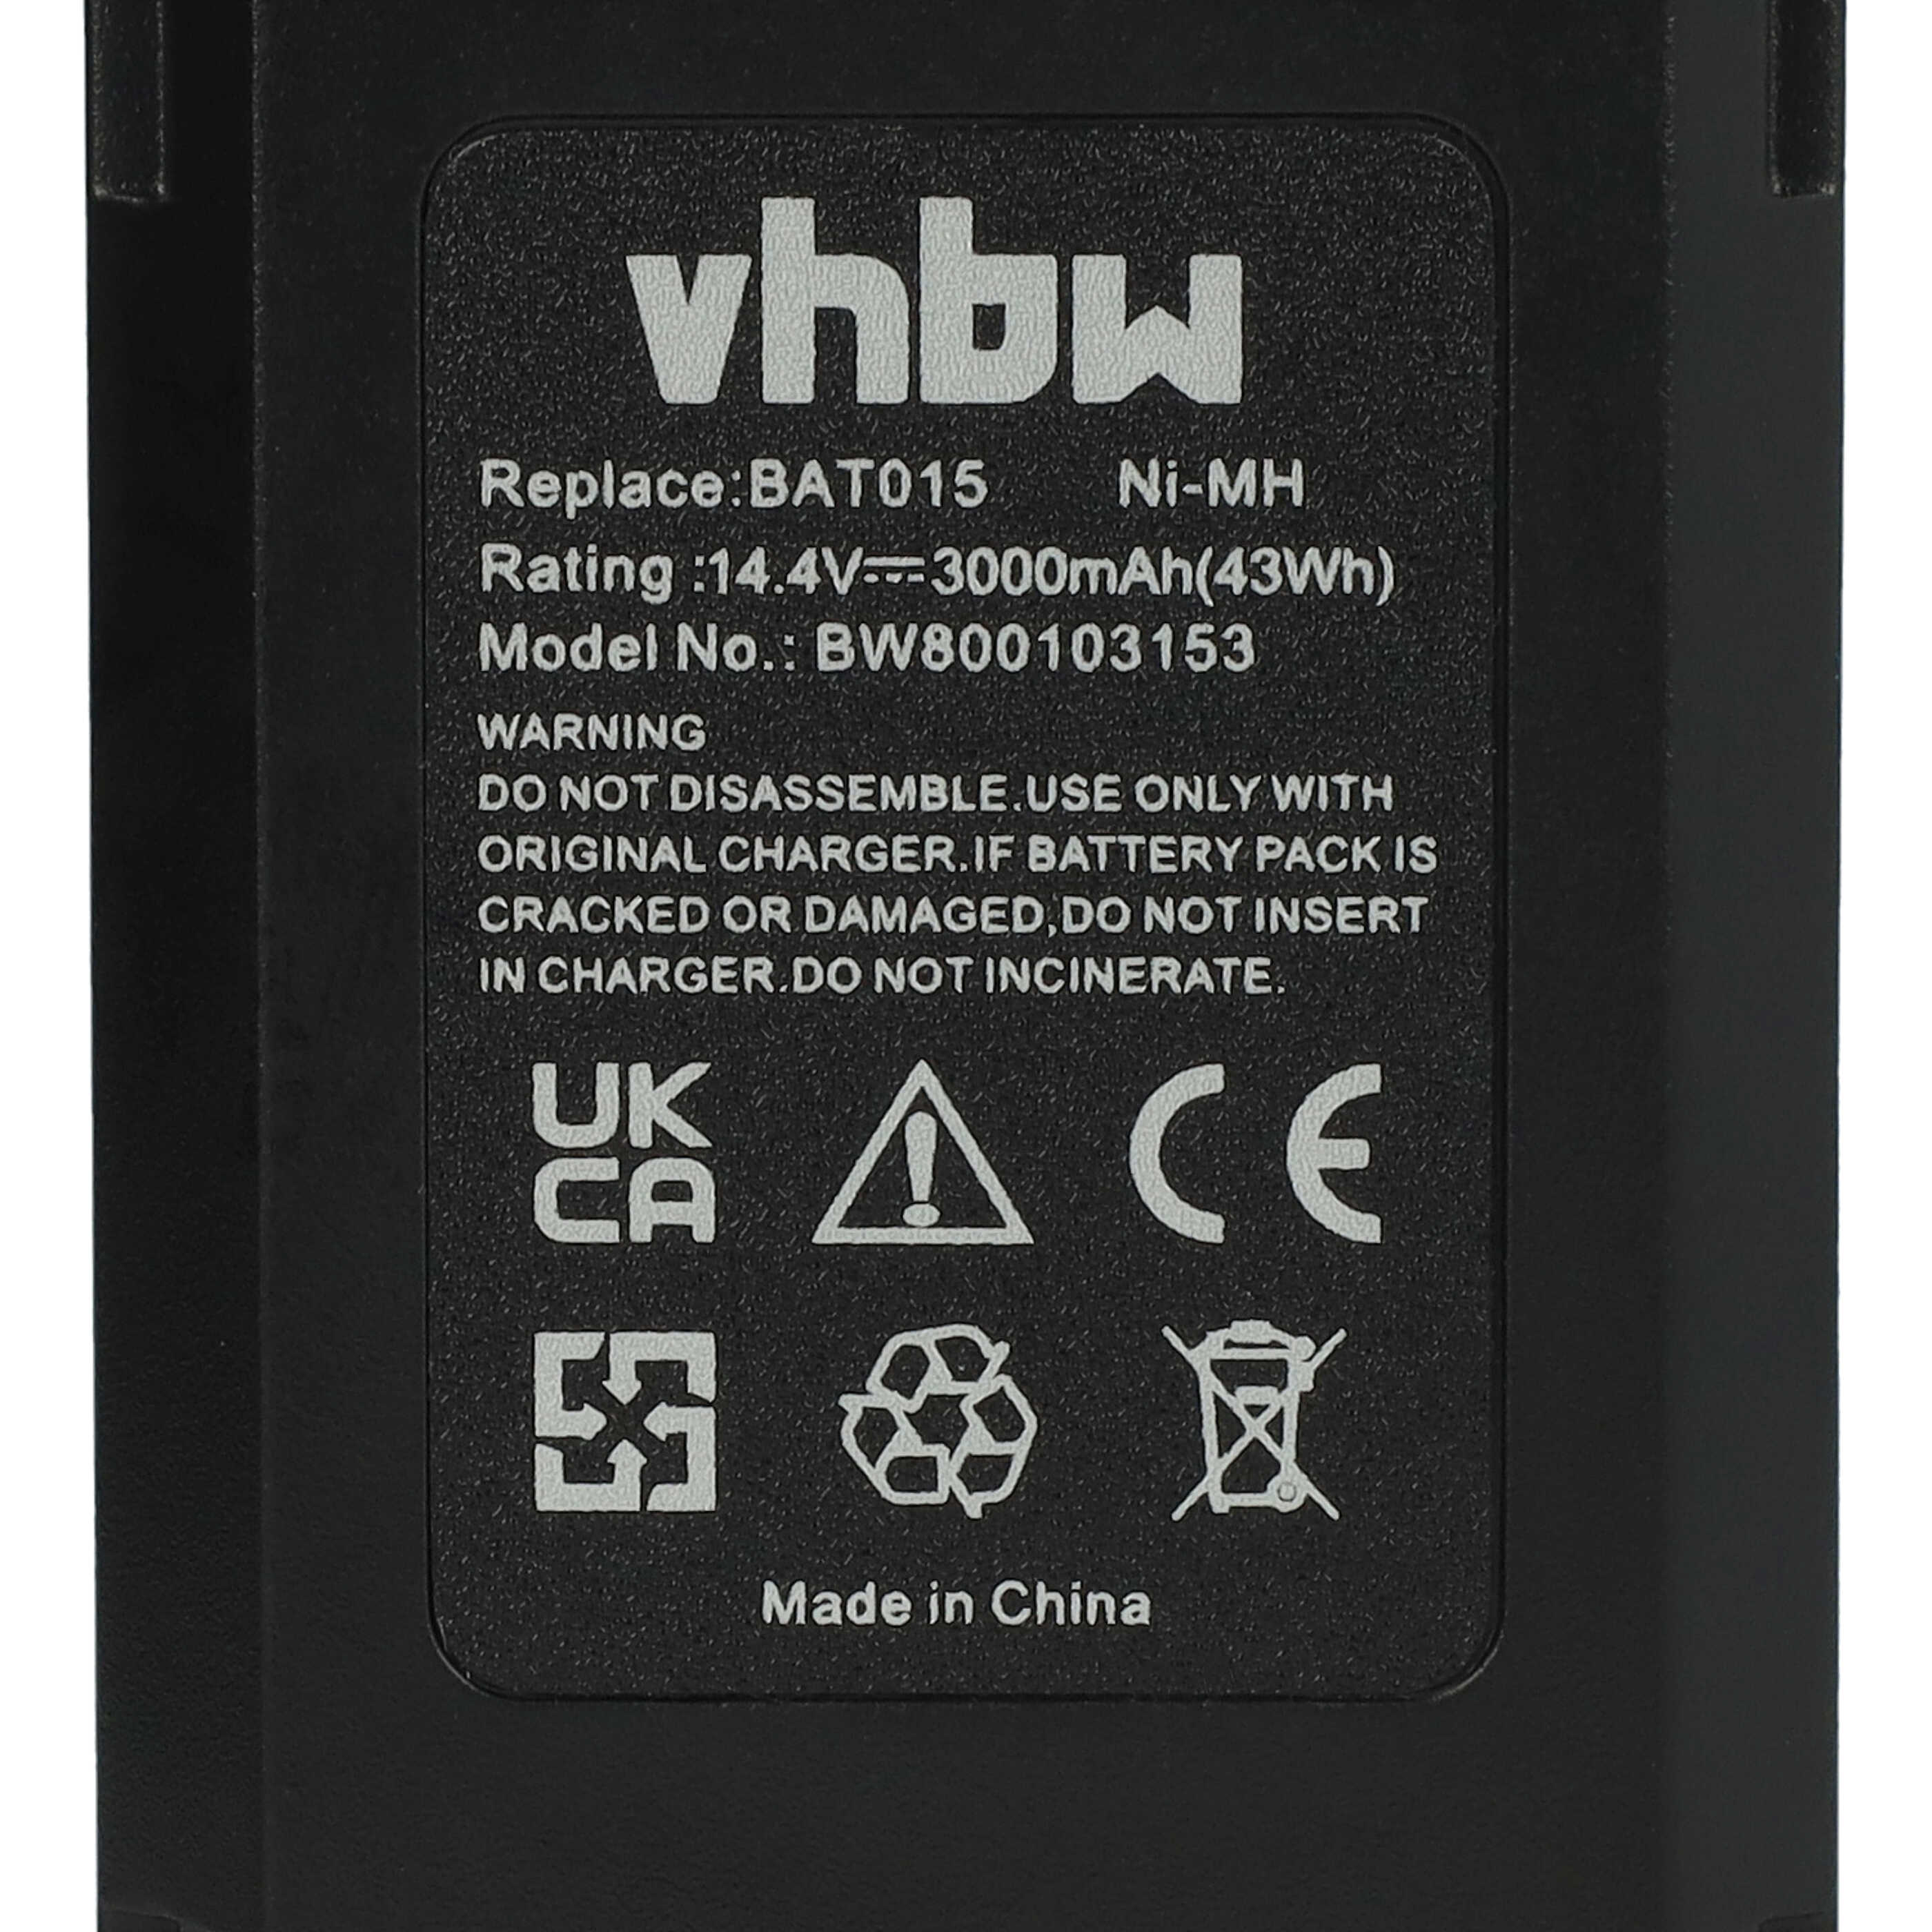 Akumulator do elektronarzędzi zamiennik Bosch 2 607 335 160 - 3000 mAh, 14,4 V, NiMH